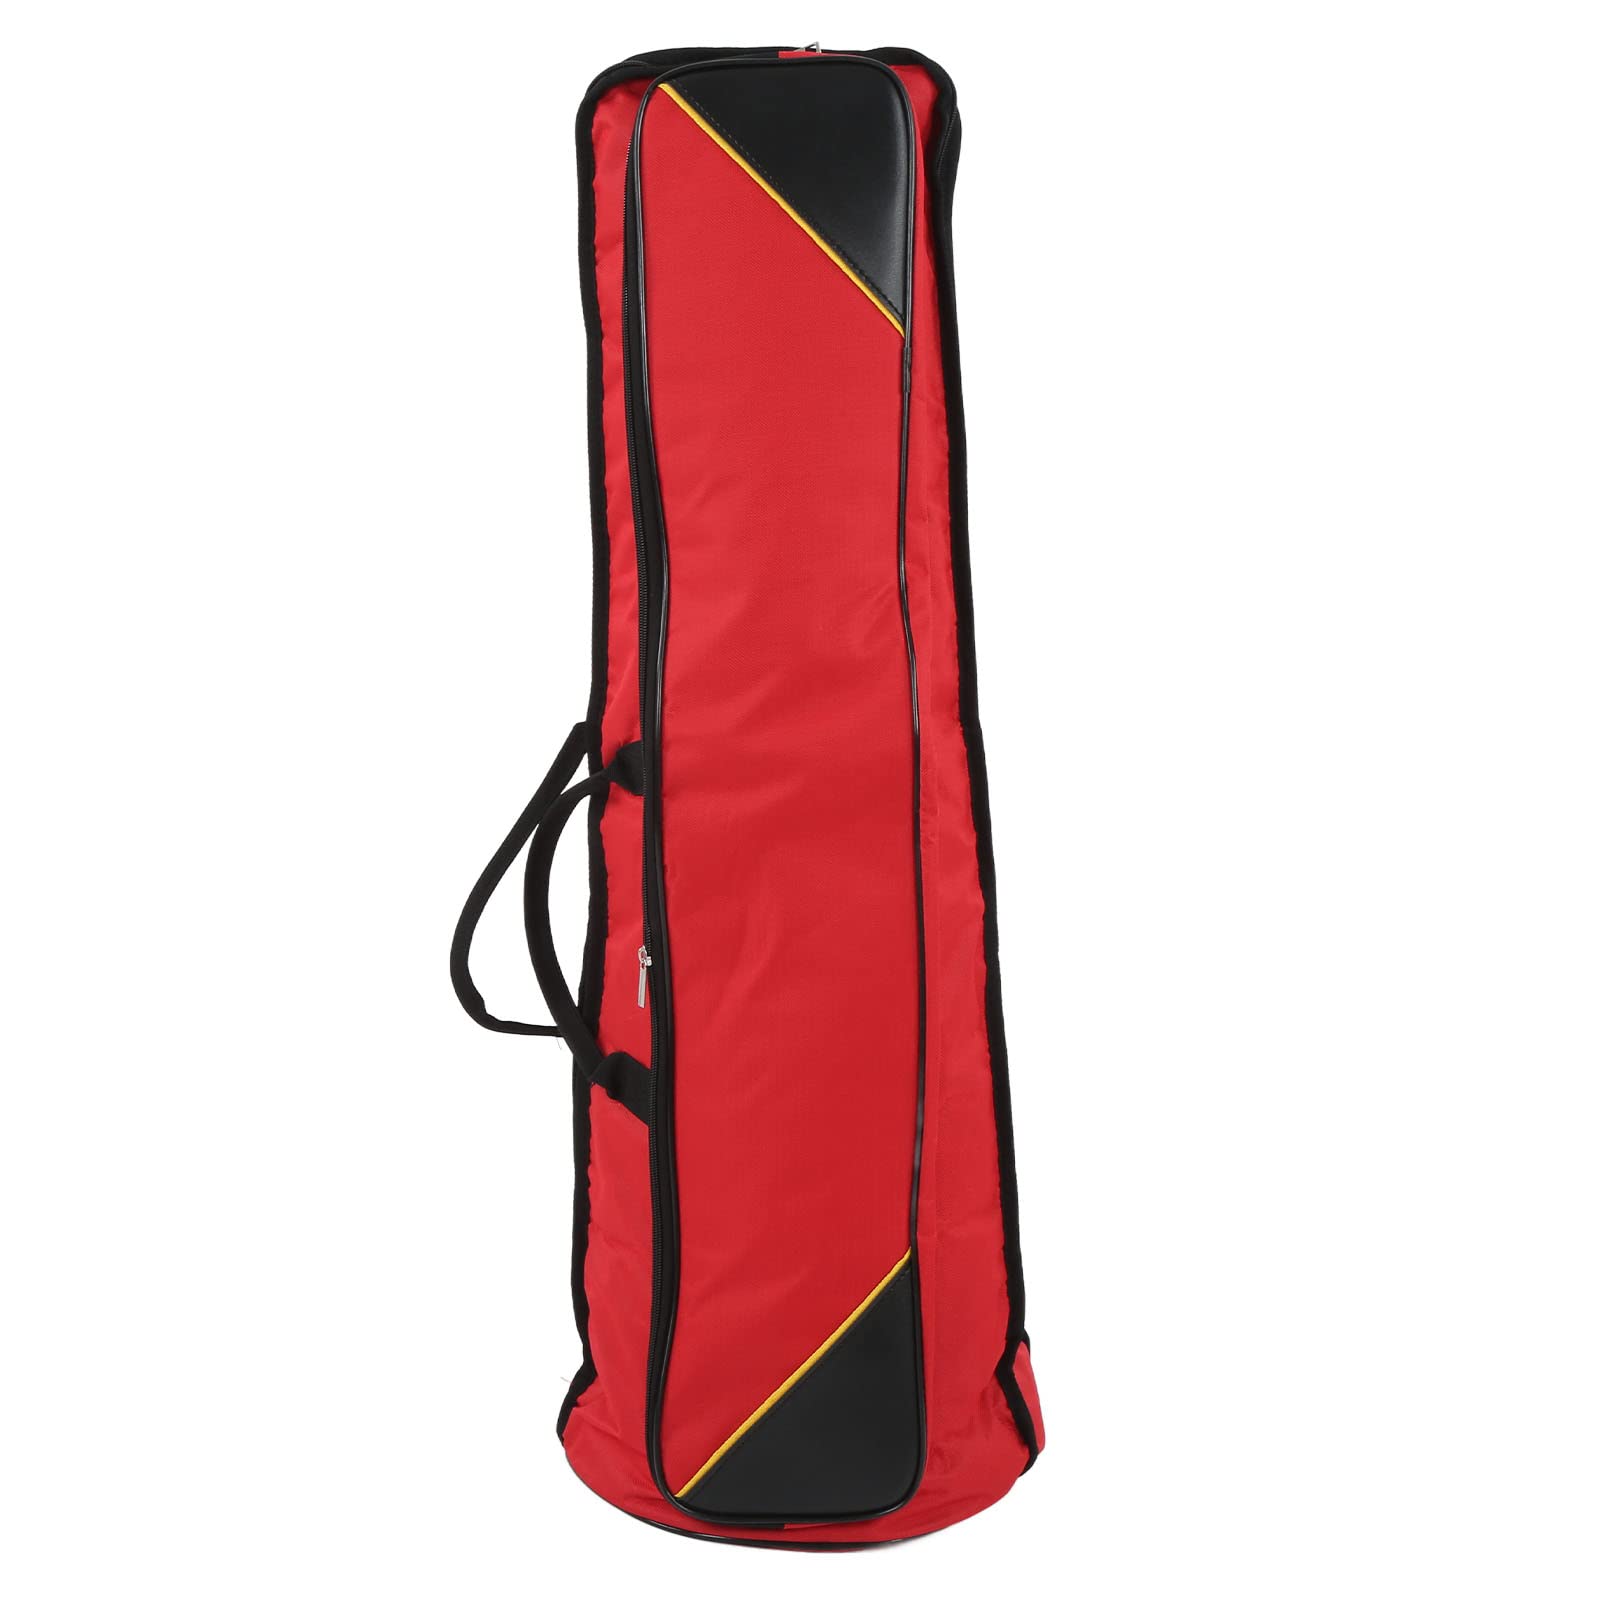 Posaune Gig Bag, 87cm Länge Strapazierfähige weiche Posaunen Schutzhüllen Tragbares Oxford Tuch für Tenorposaune(rot)